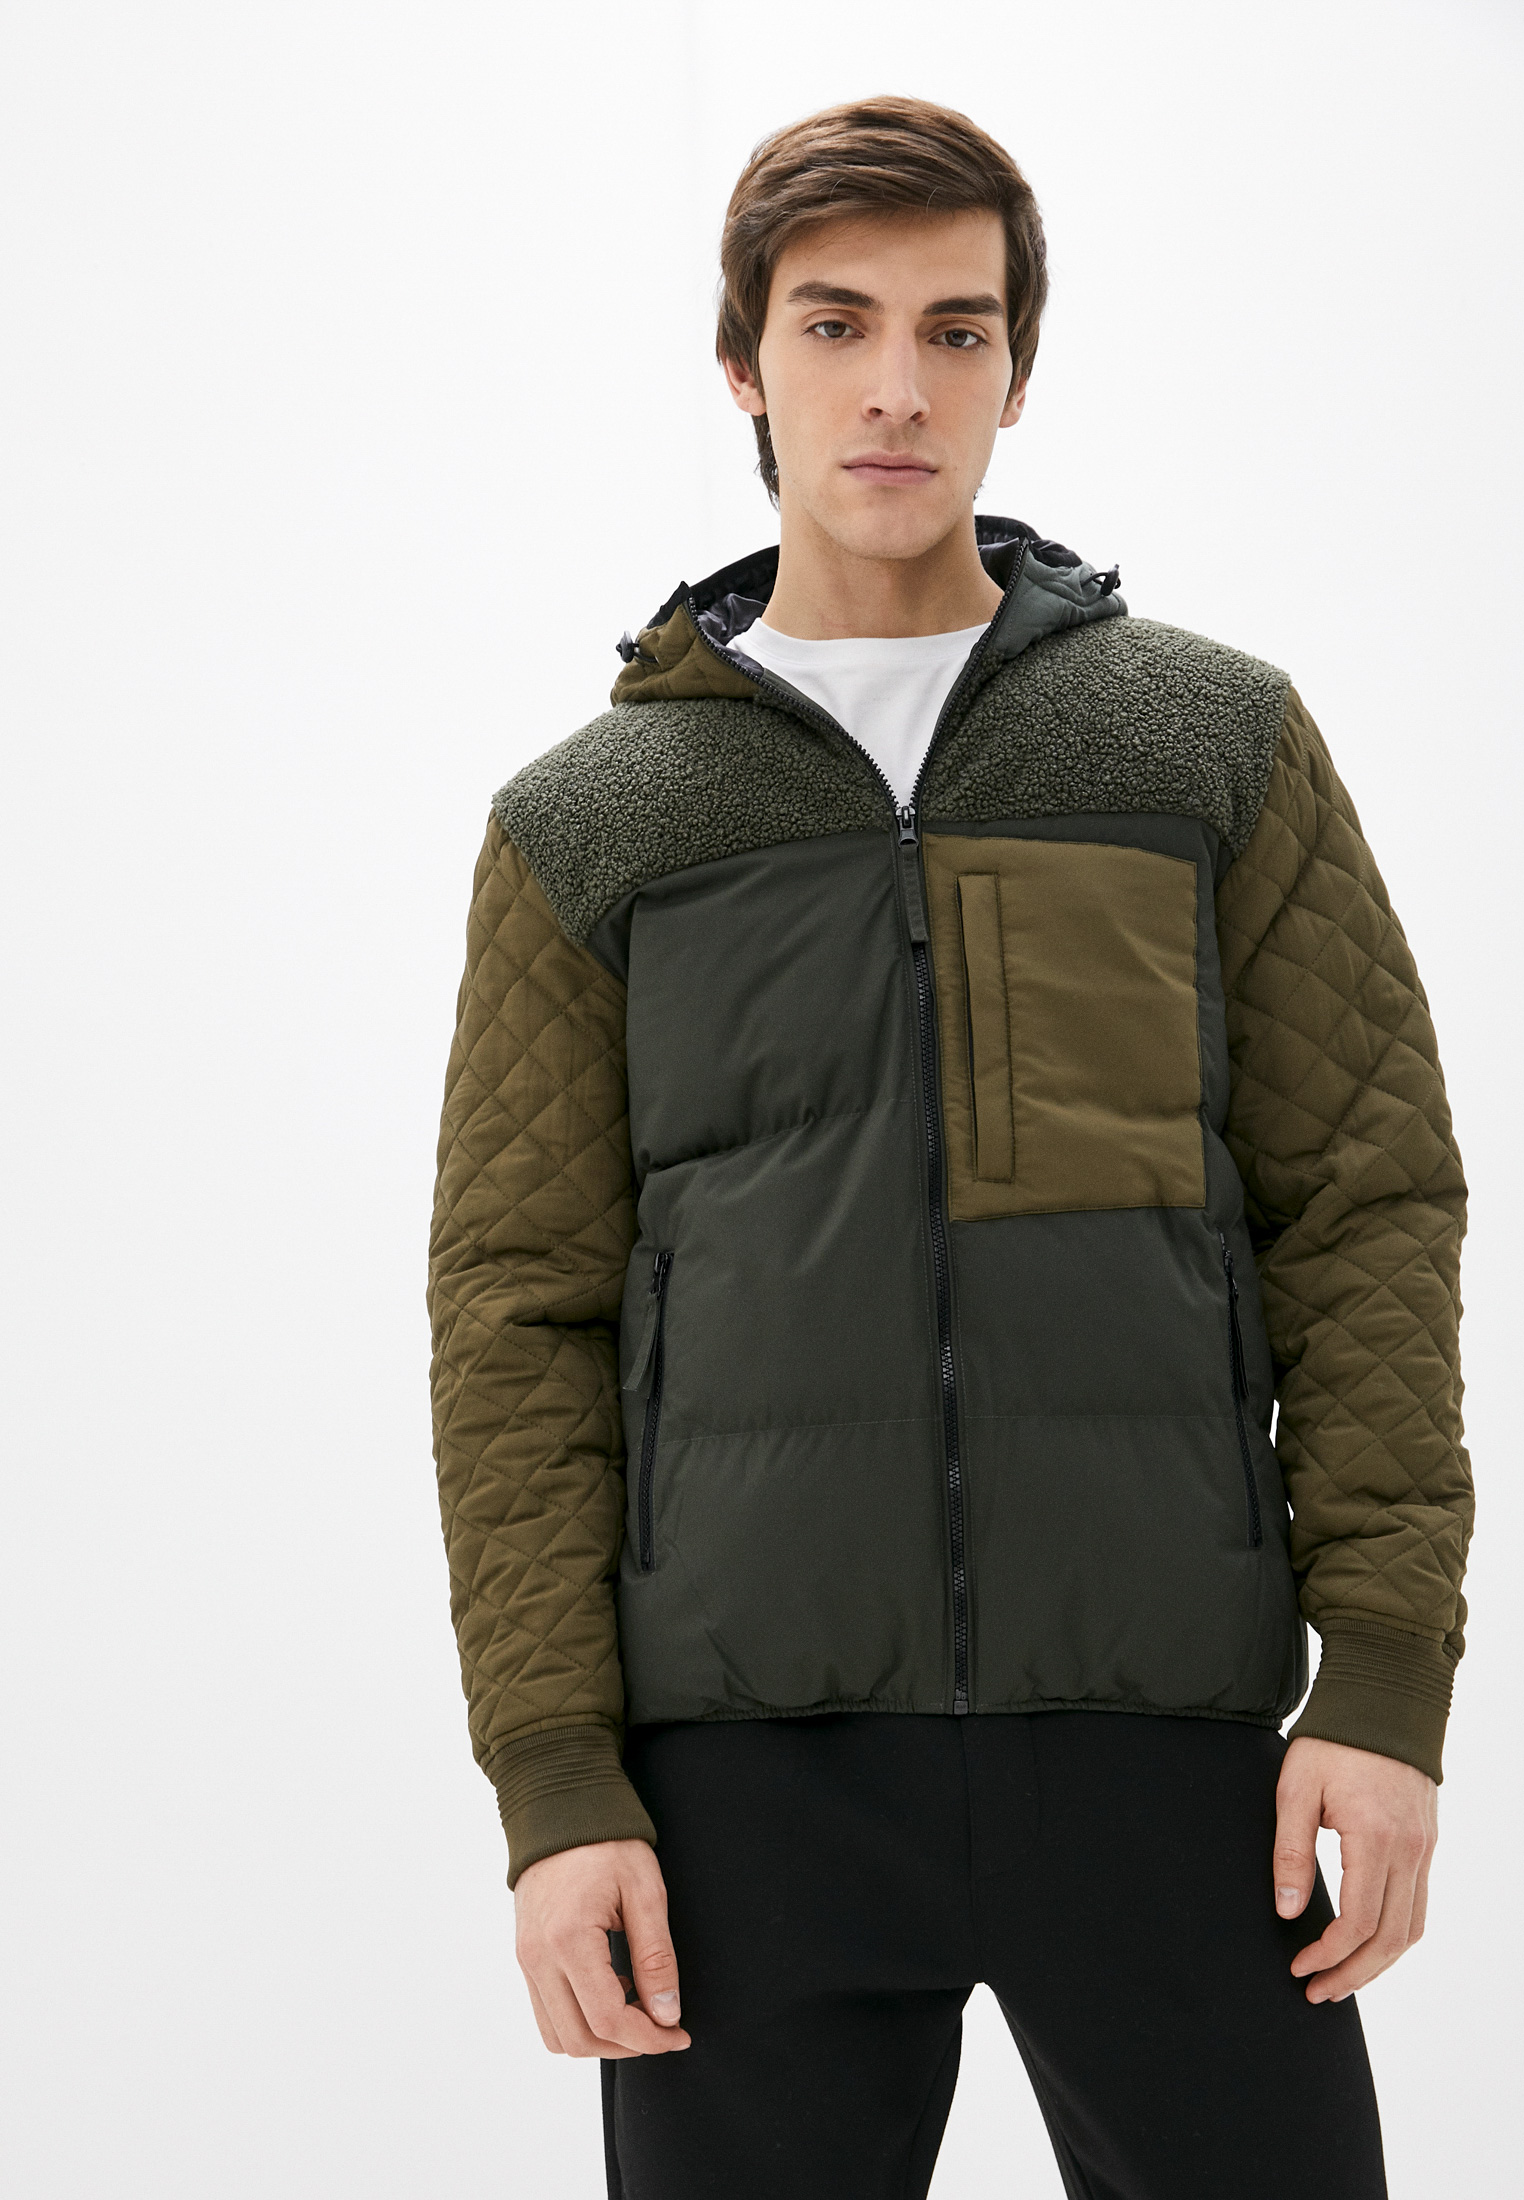 Утепленная куртка мужская Desigual (Дезигуаль) 21WMEW15 купить за 13010 руб.